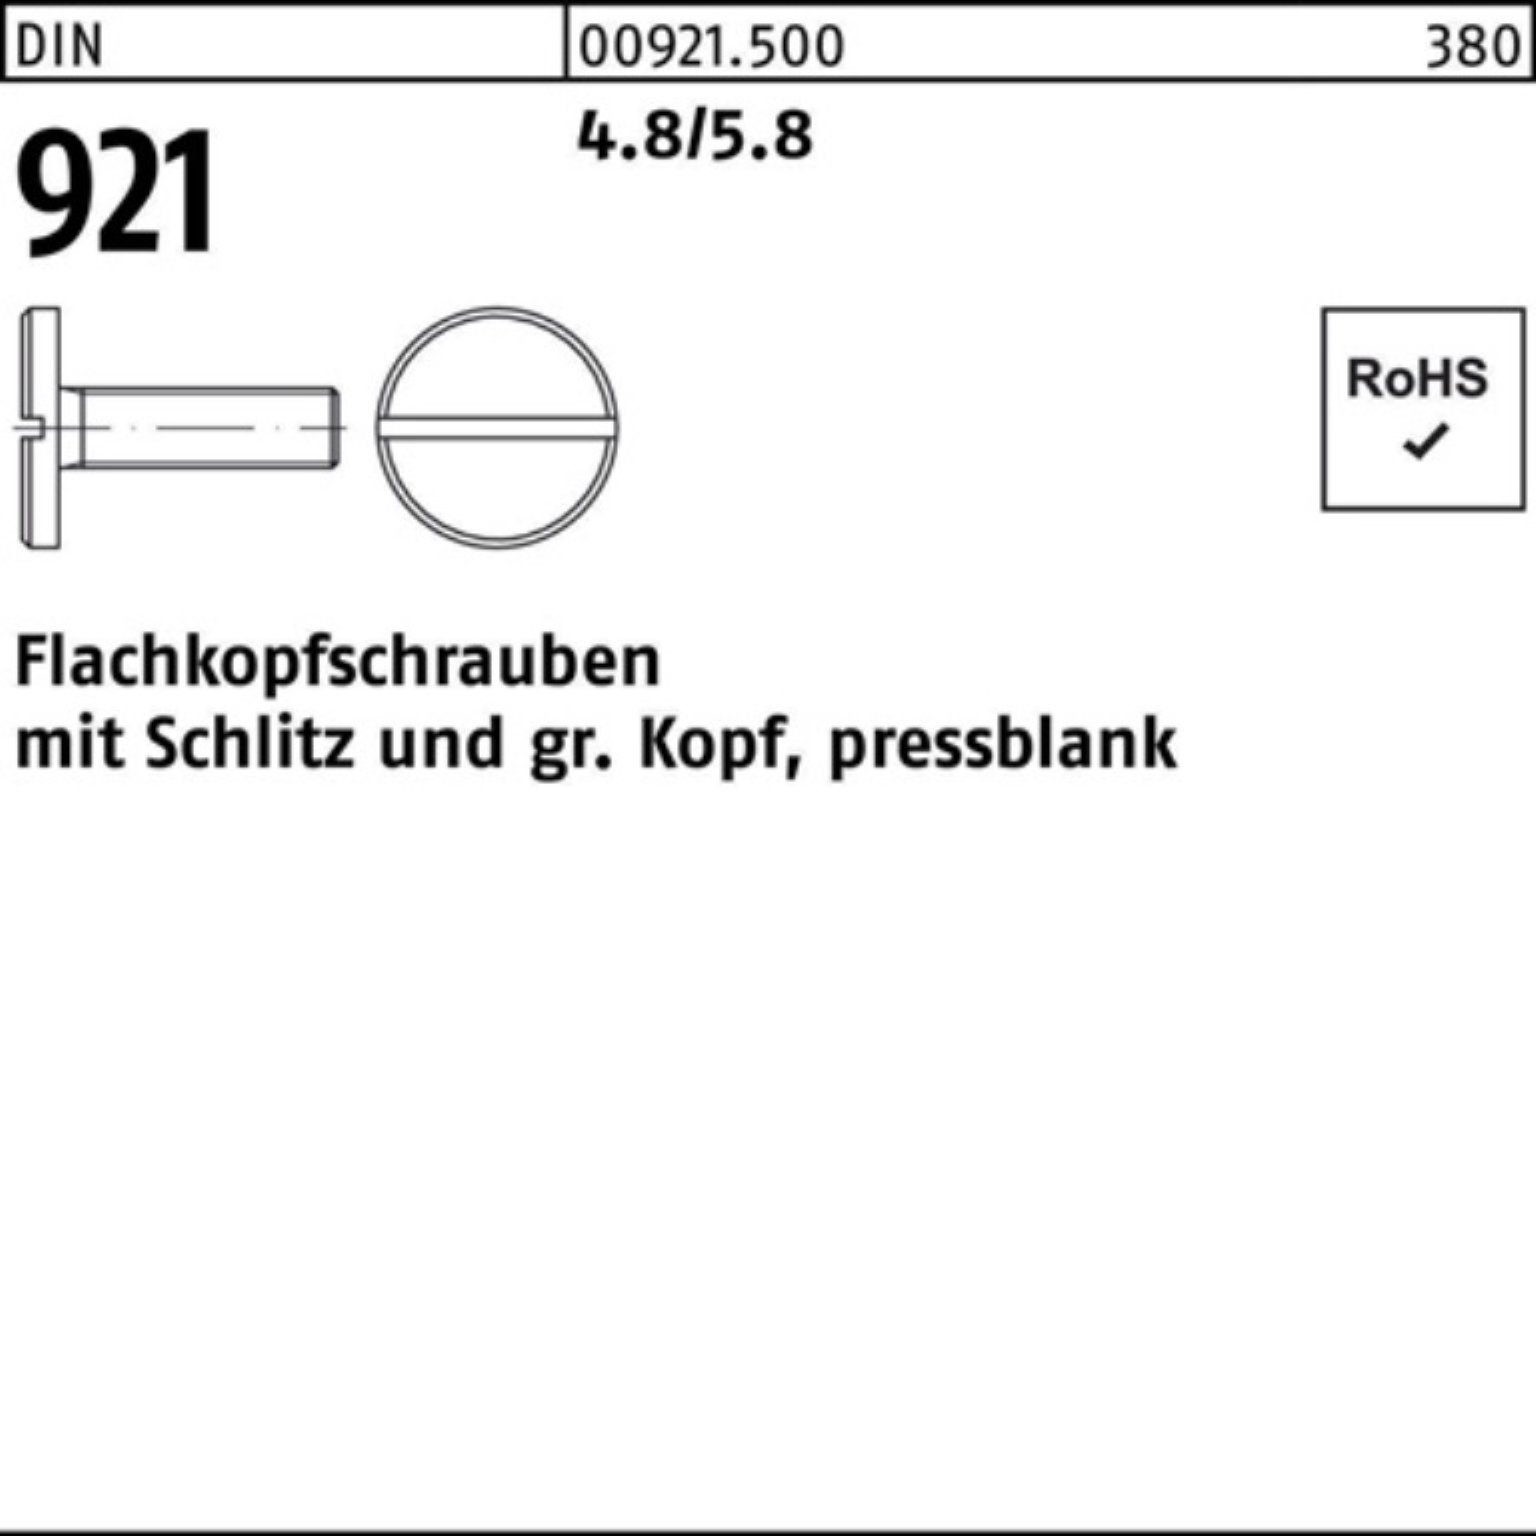 Reyher Schraube 100er Pack Flachkopfschraube DIN 921 Schlitz M6x 16 4.8/5.8 100 Stück